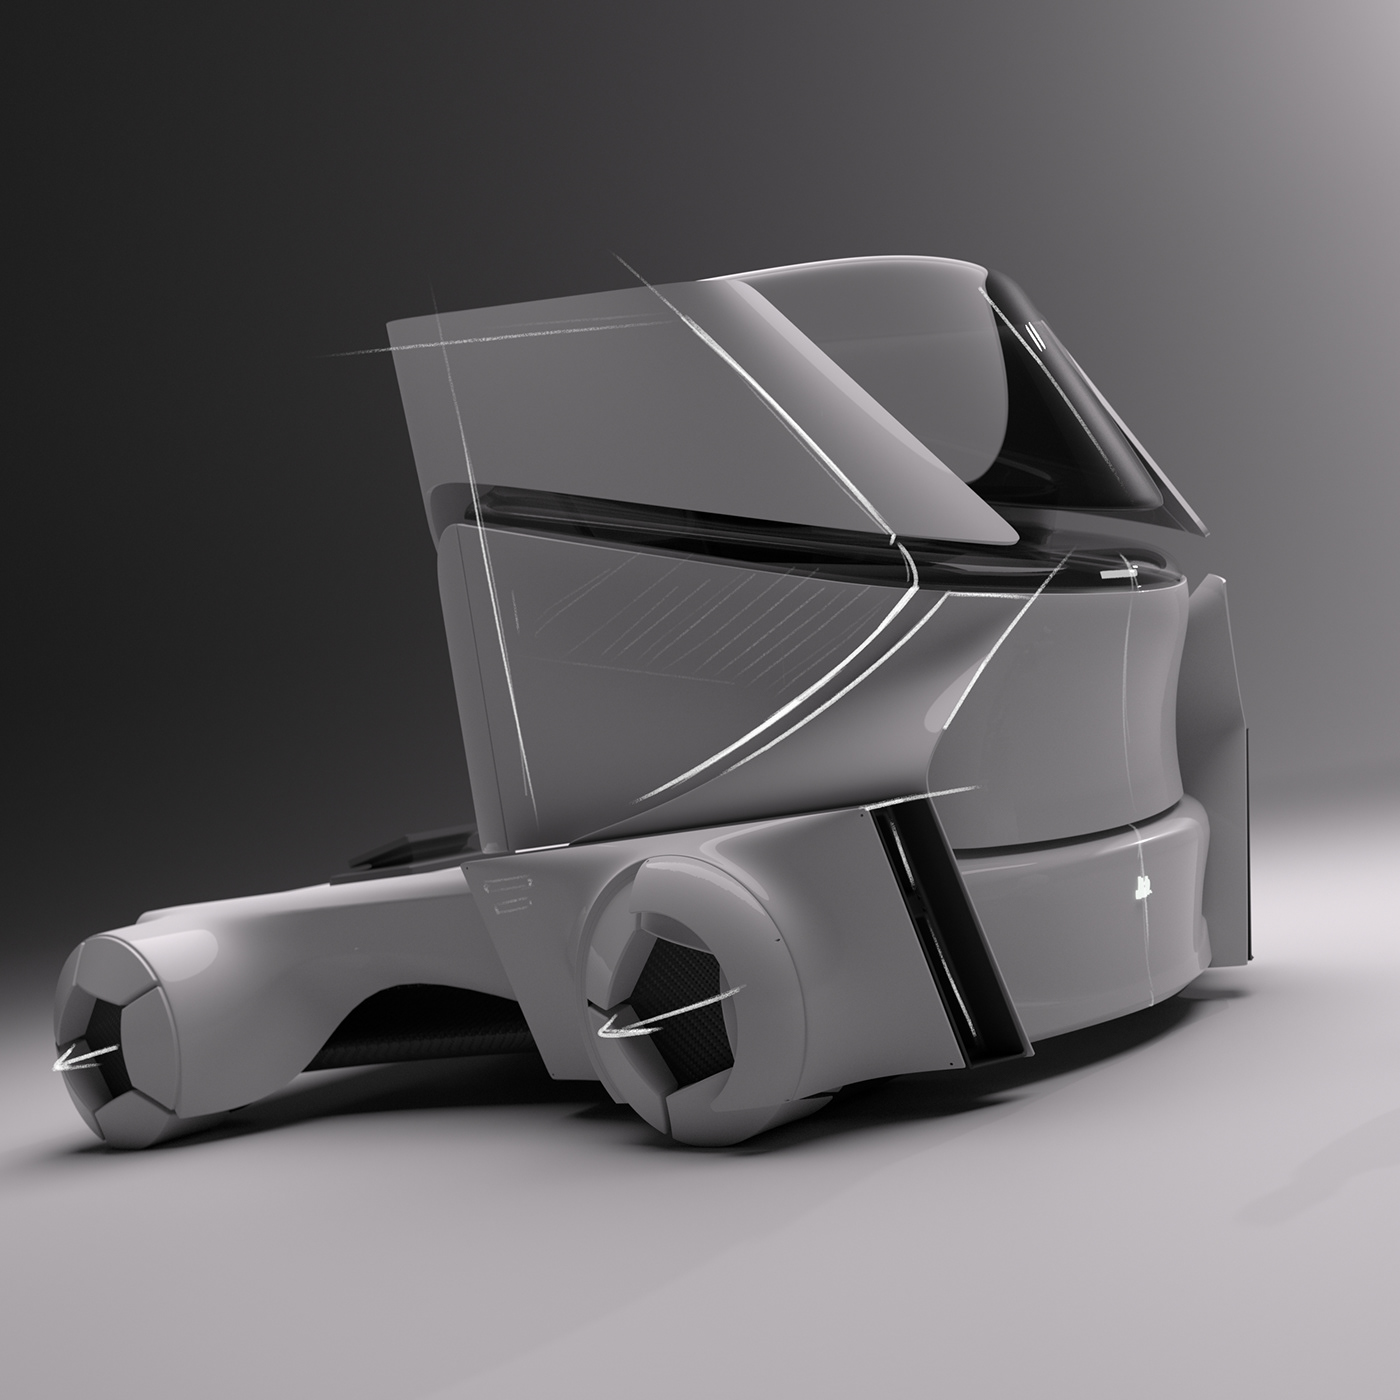 automotive   Automotive design concept concept car design Transport transportation Transportation Design Truck Vehicle